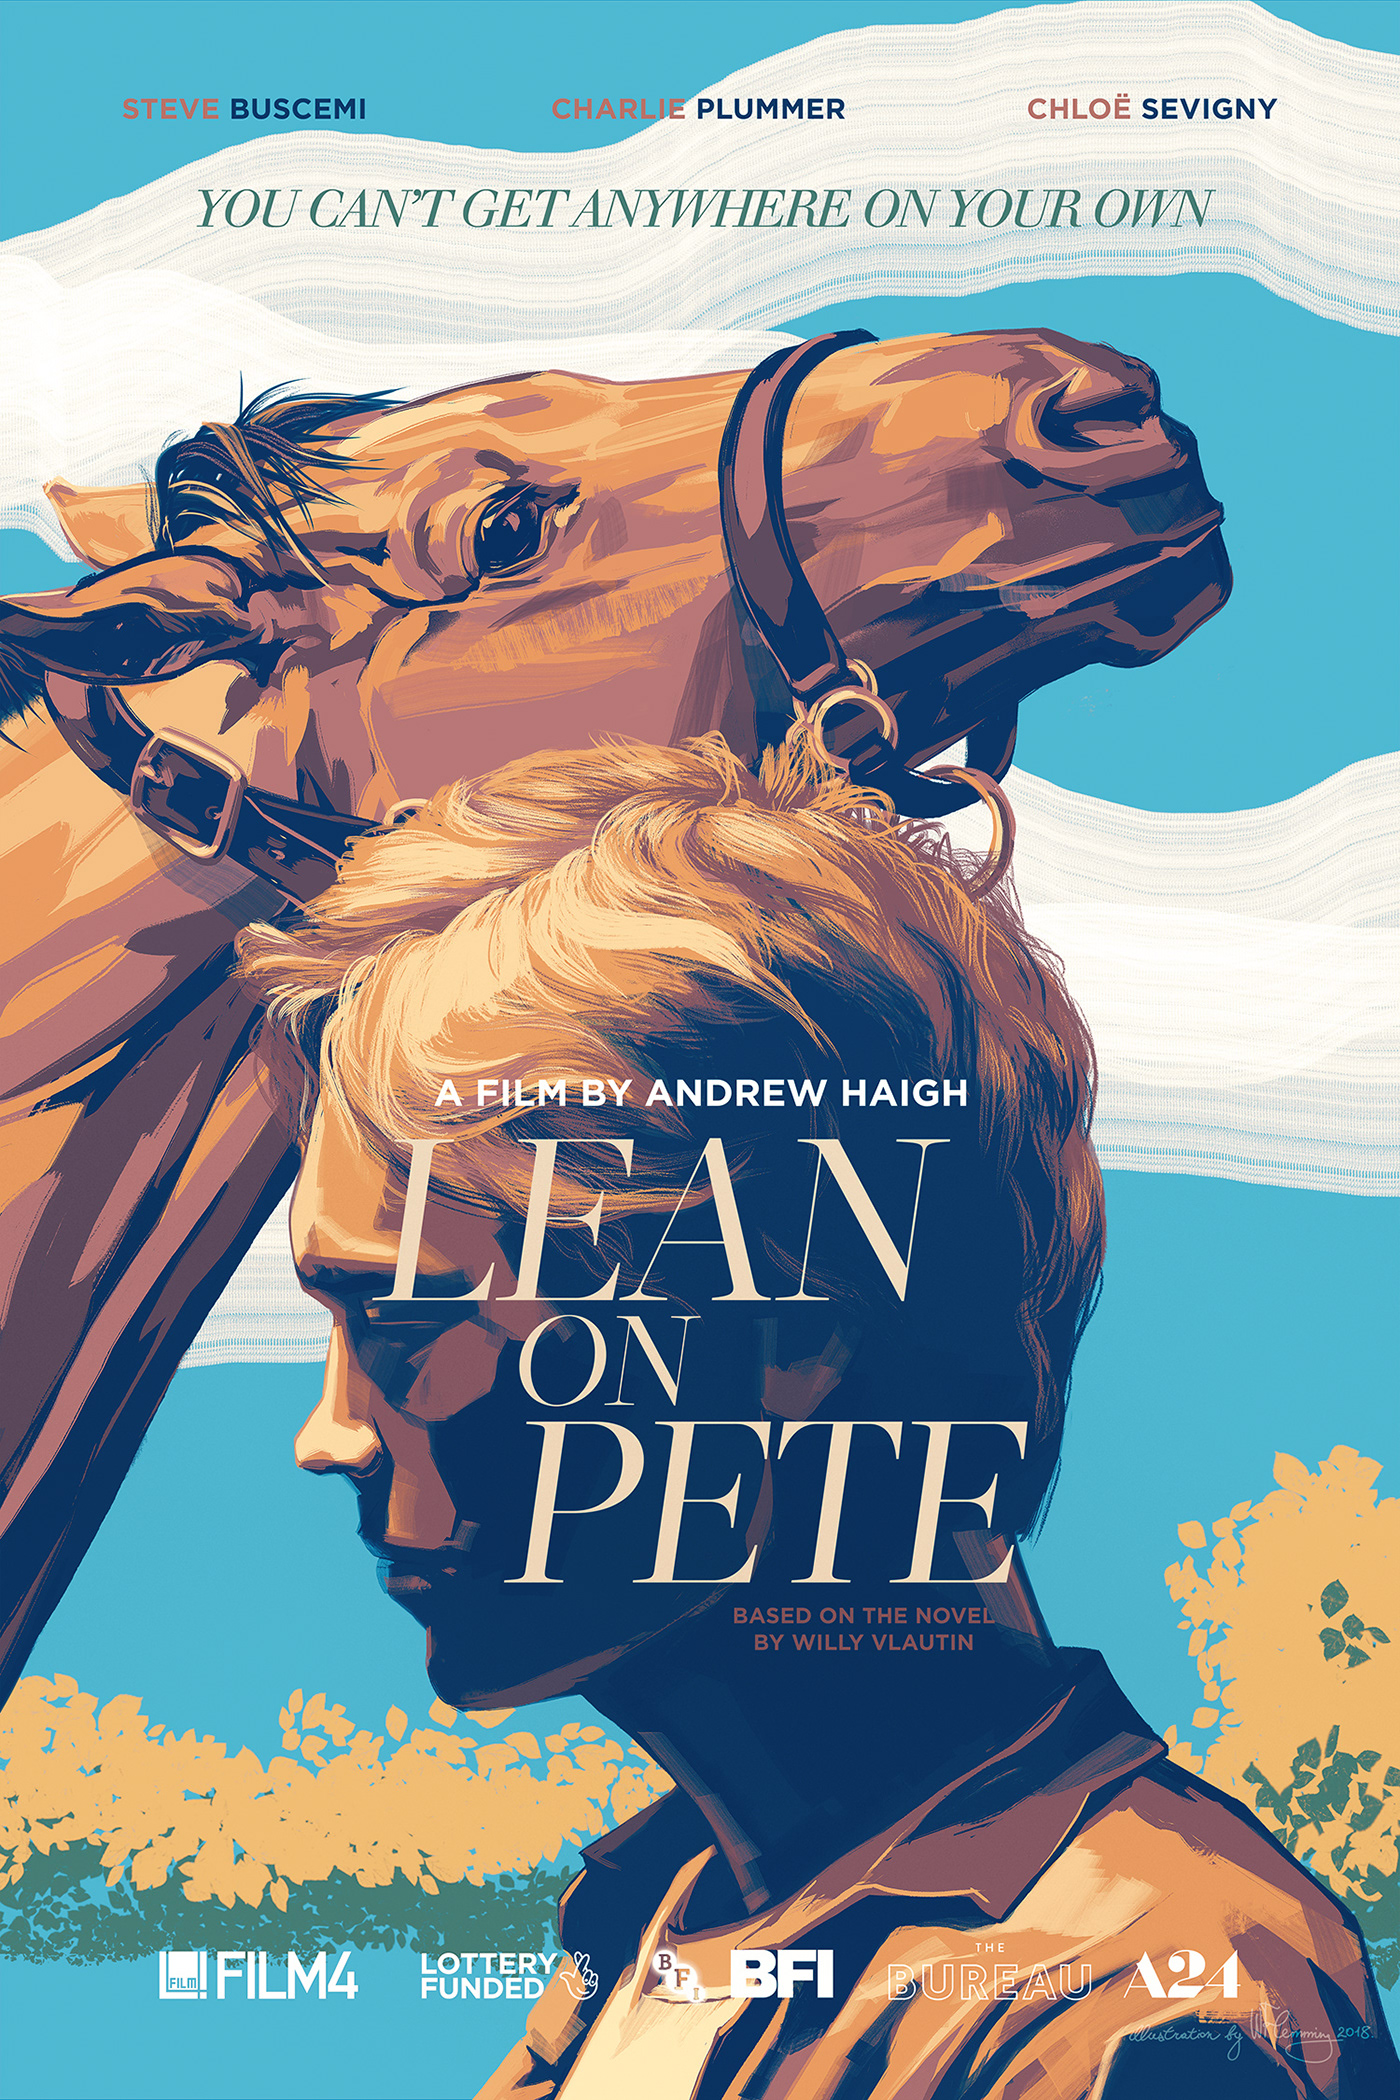 movie poster ILLUSTRATION  W Flemming portrait Andrew Haigh Steve Buscemi chloe sevigny charlie plummer horses Portraiture